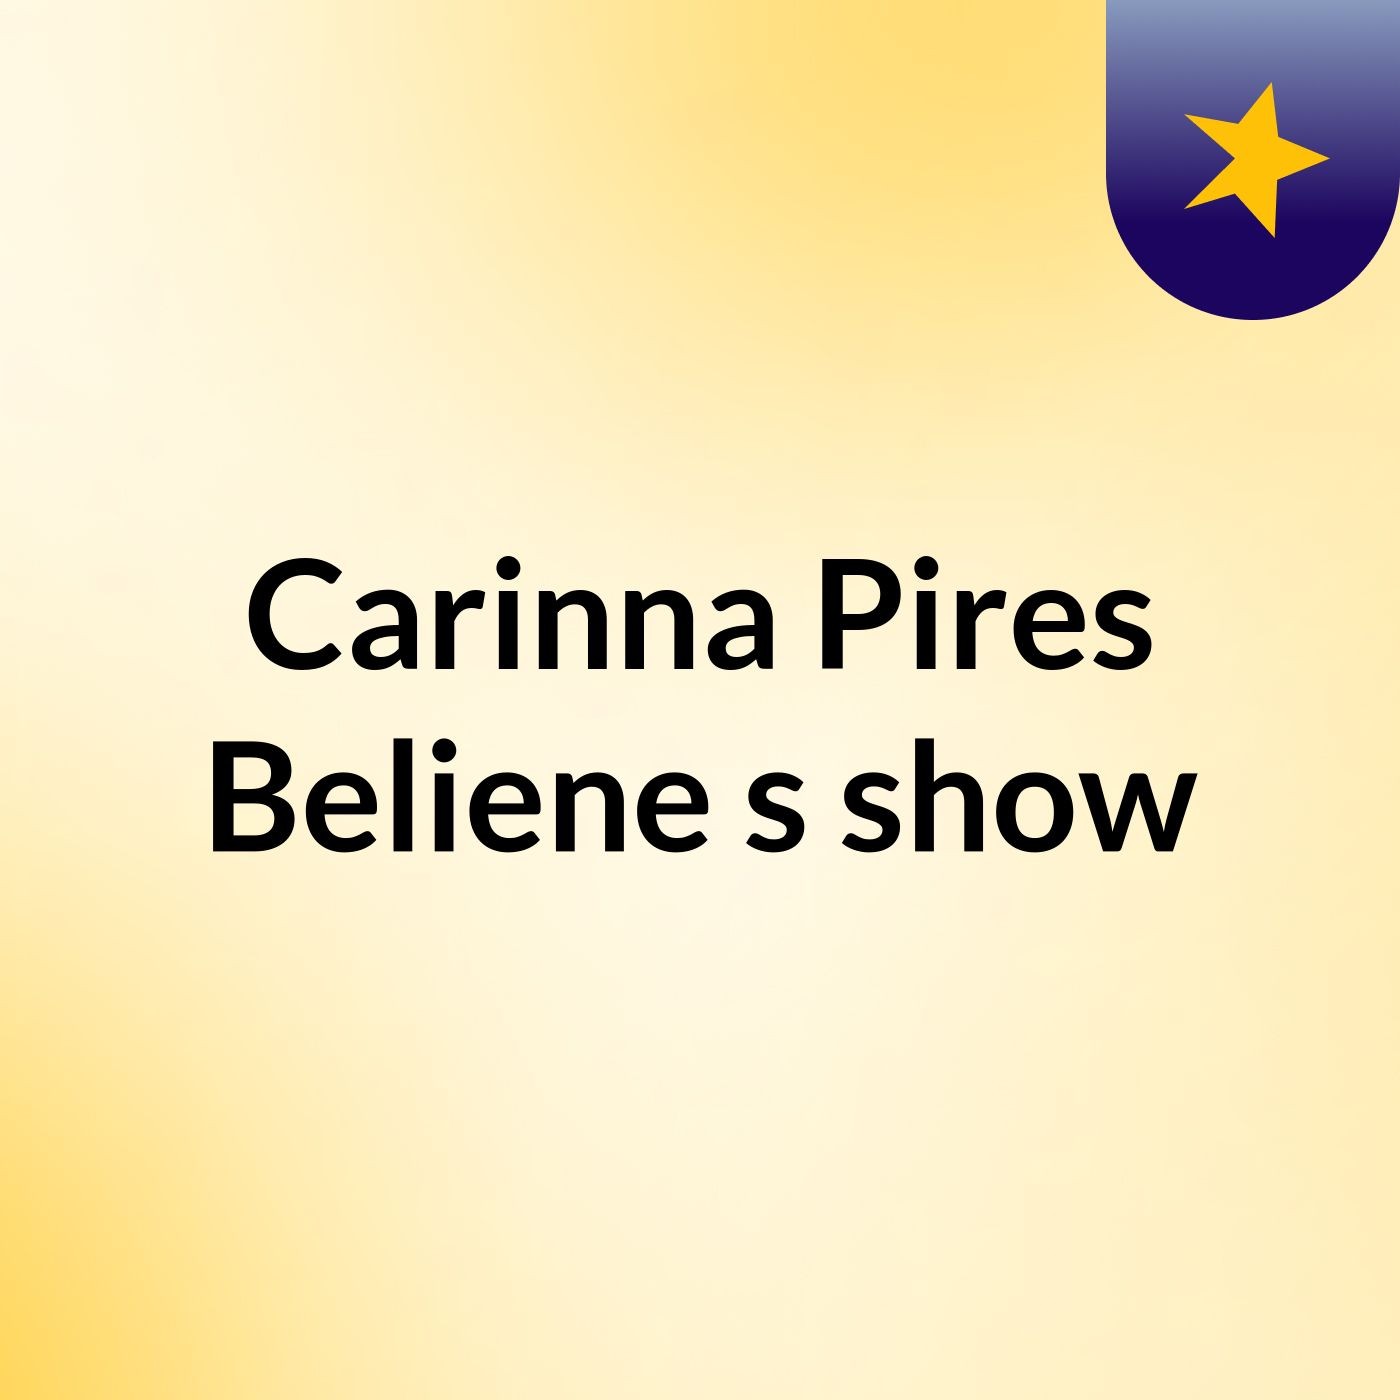 Carinna Pires Beliene's show